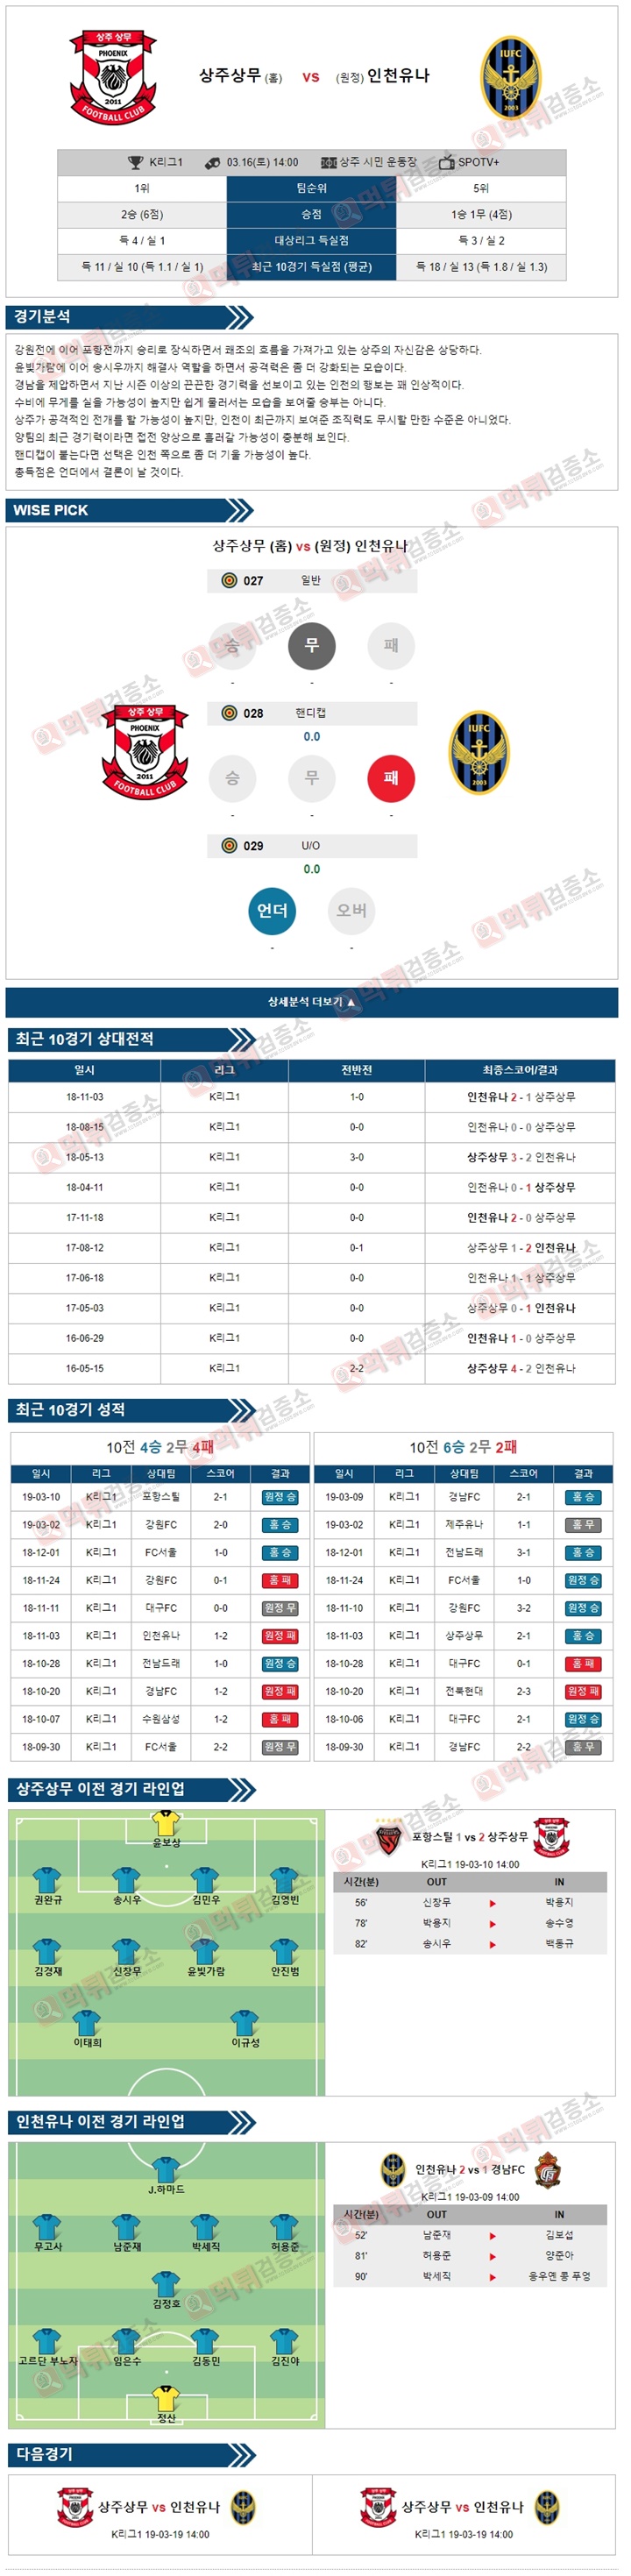 분석픽 K리그1 3월16일 상주상무 vs 인천유나 경기 분석